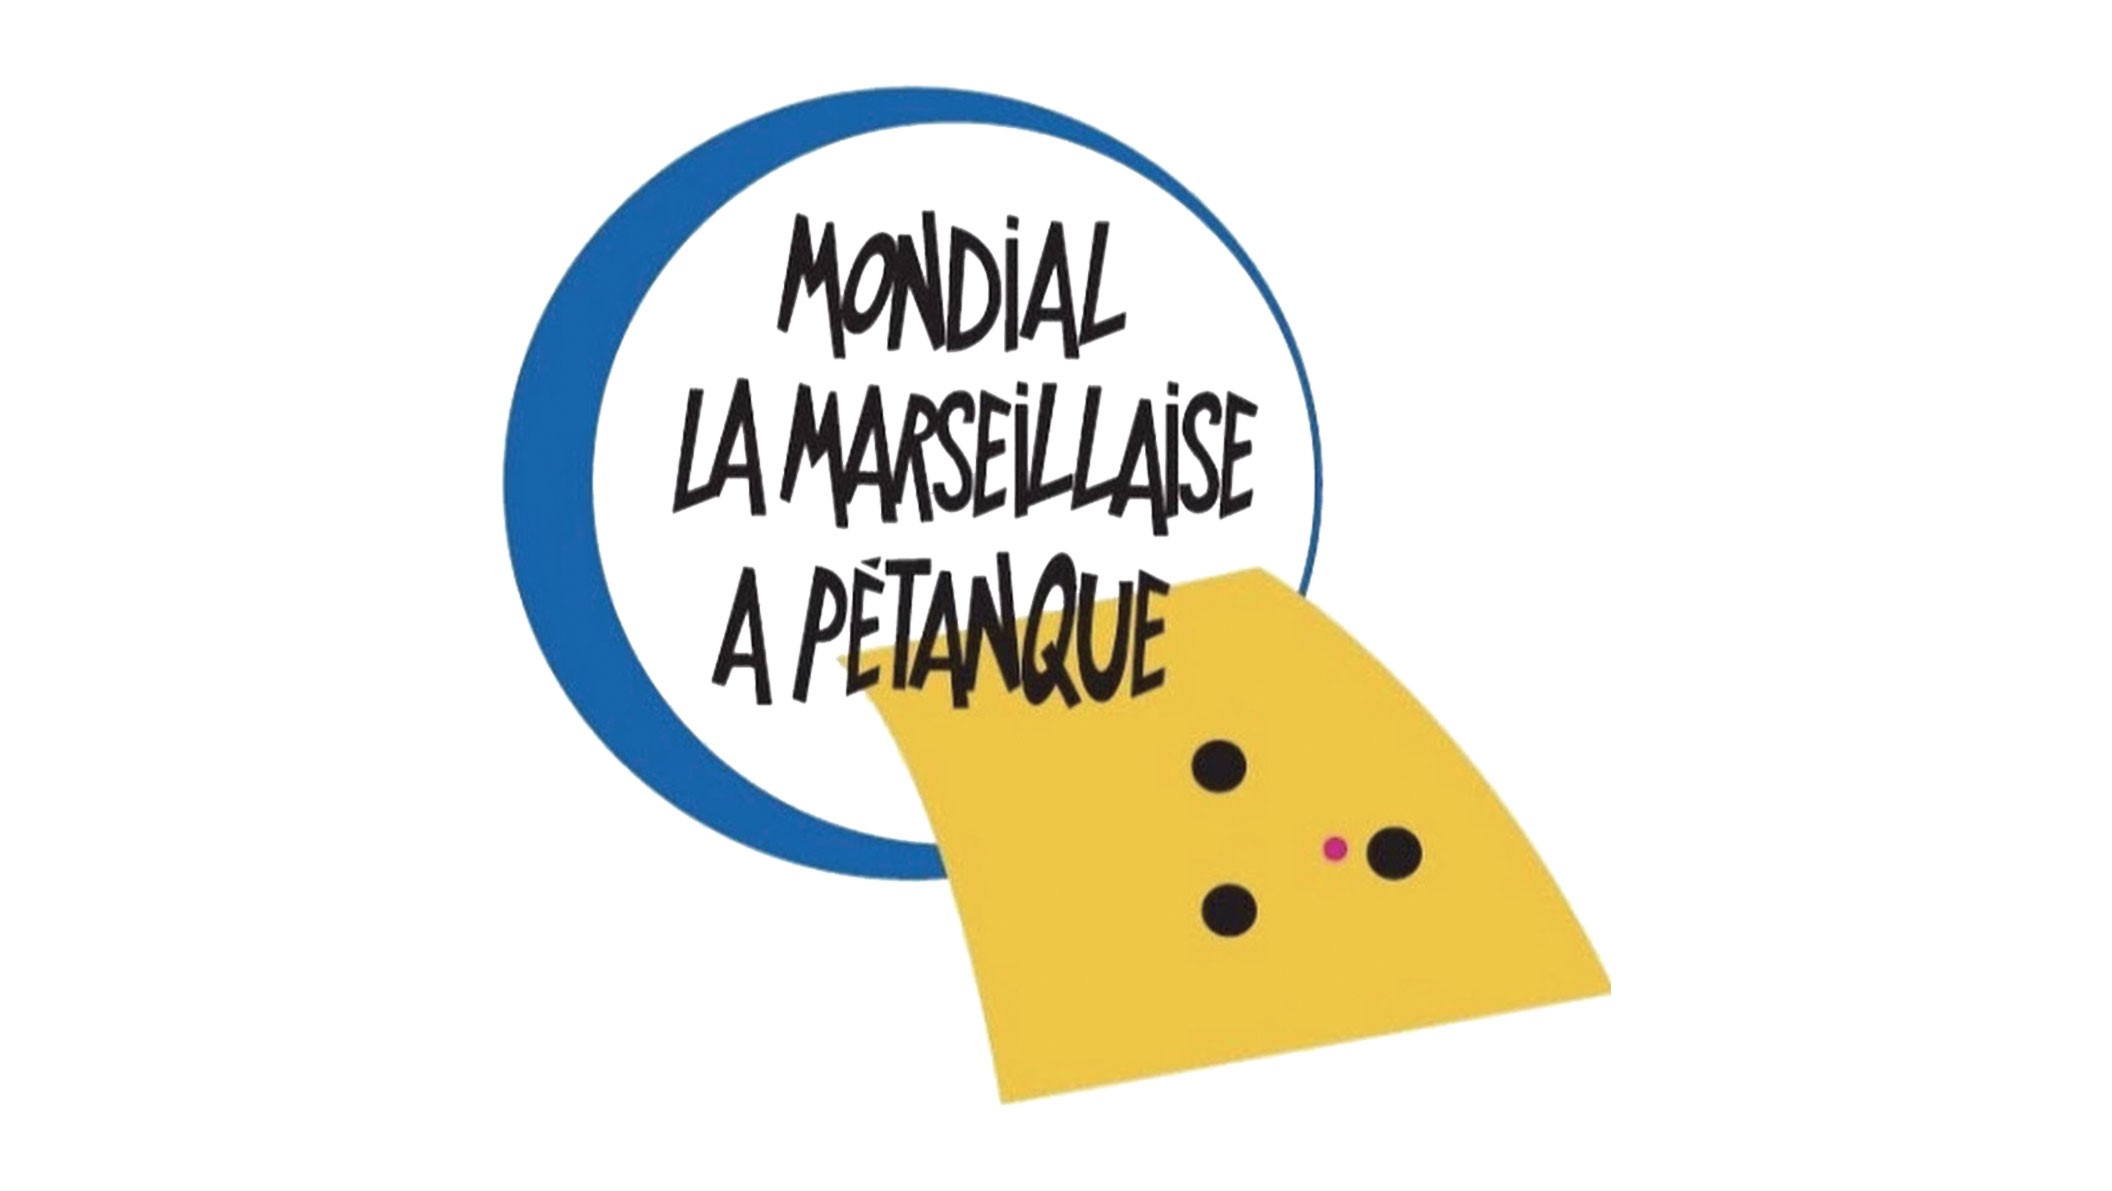 Les équipes FIC participent à la 61ème édition de La Marseillaise à pétanque